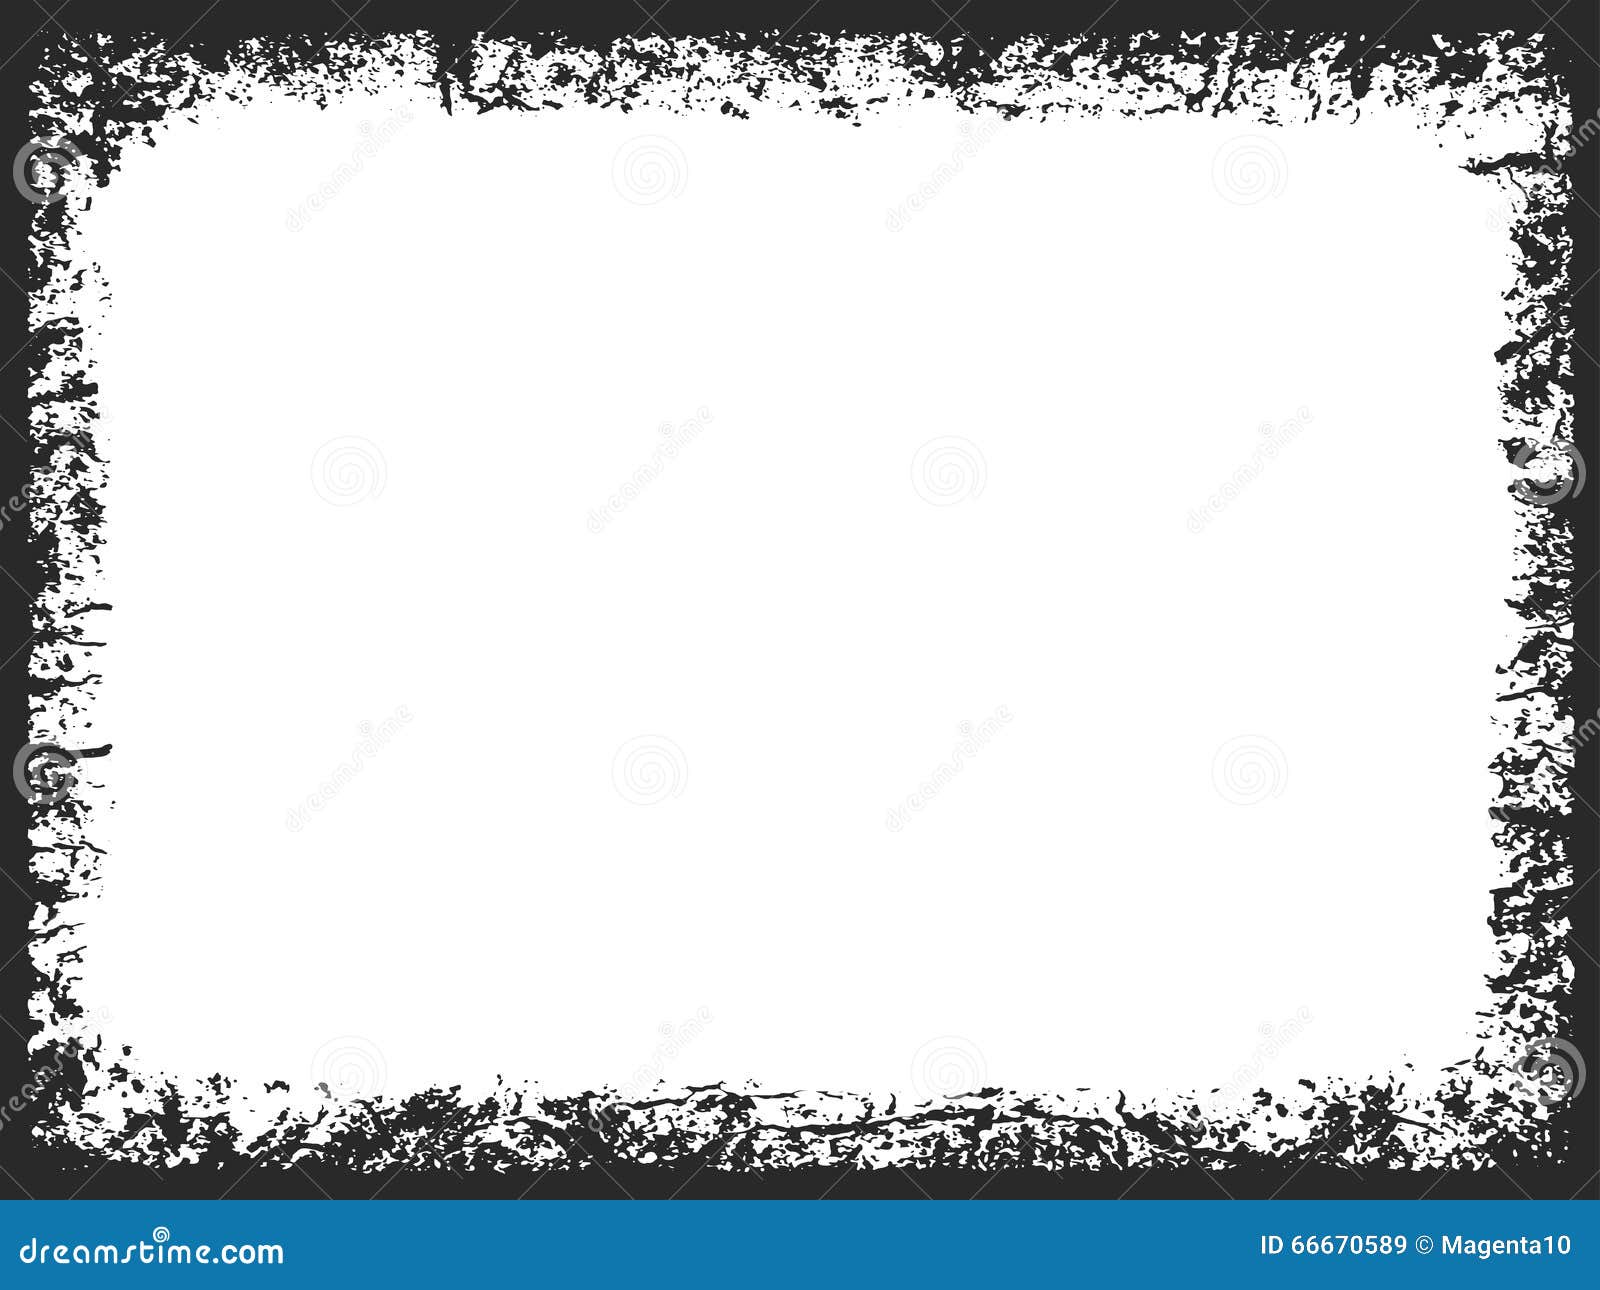 Download Grunge rectangle frame stock vector. Illustration of ...